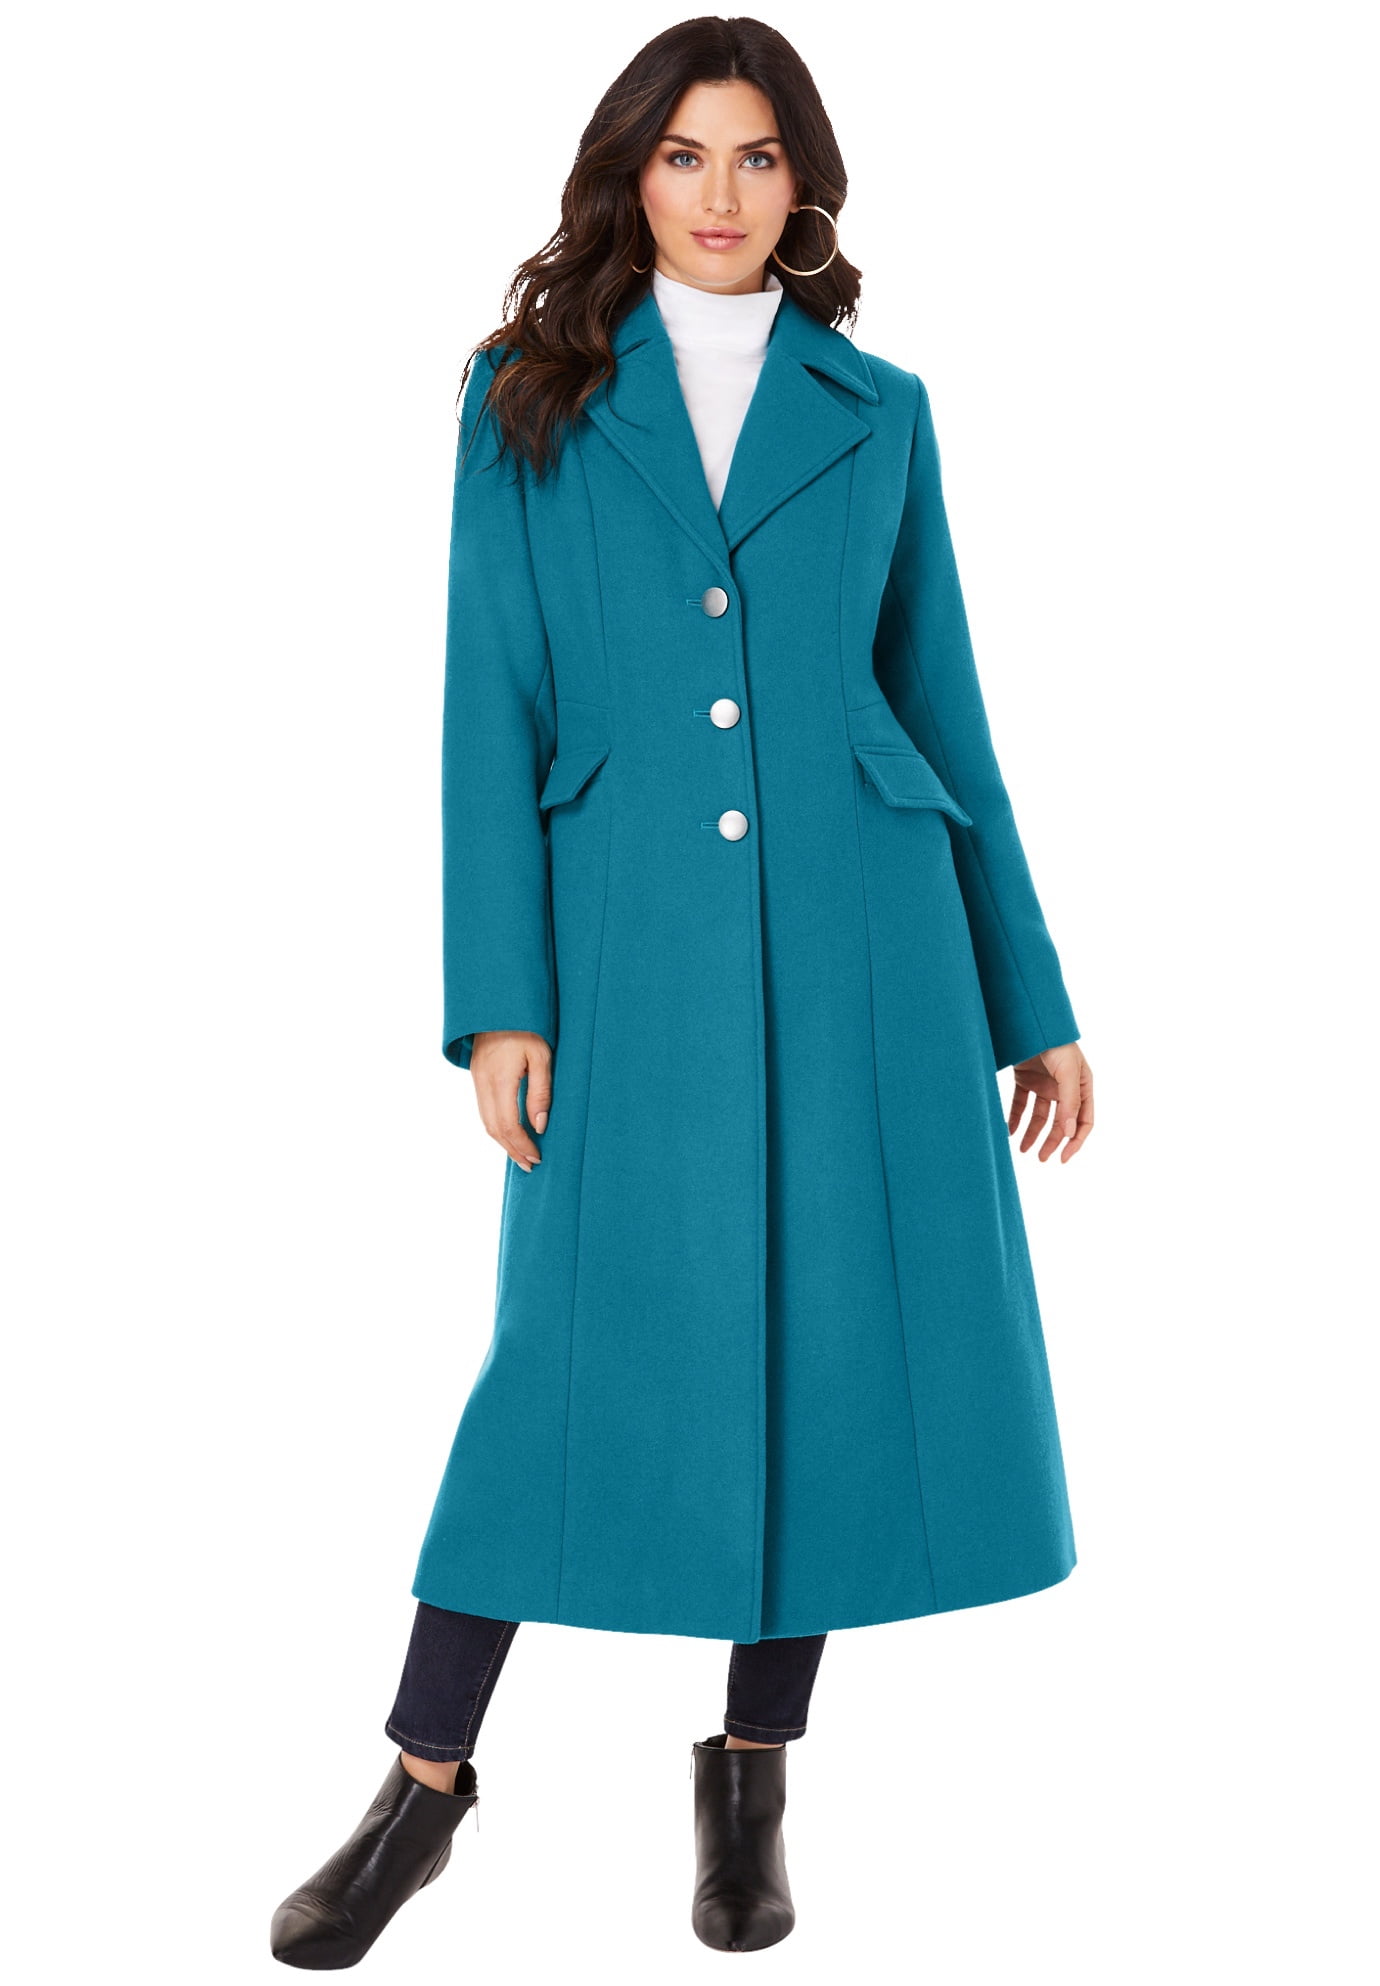 Women's Wool & Wool-Blend Coats